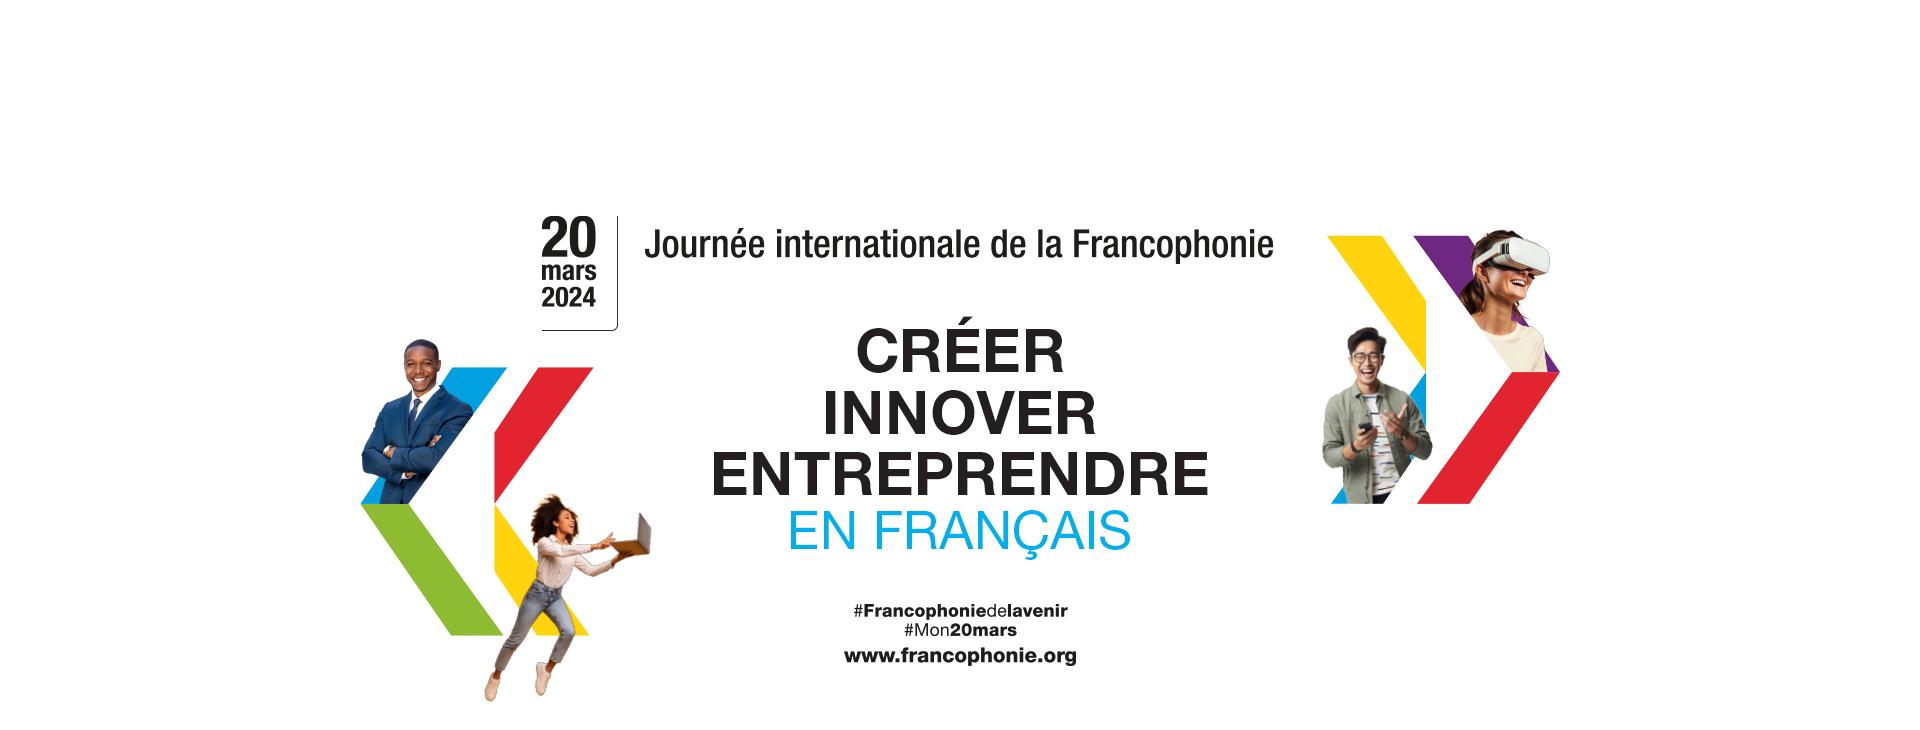  Journée internationale de la Francophonie 20 mars 2024